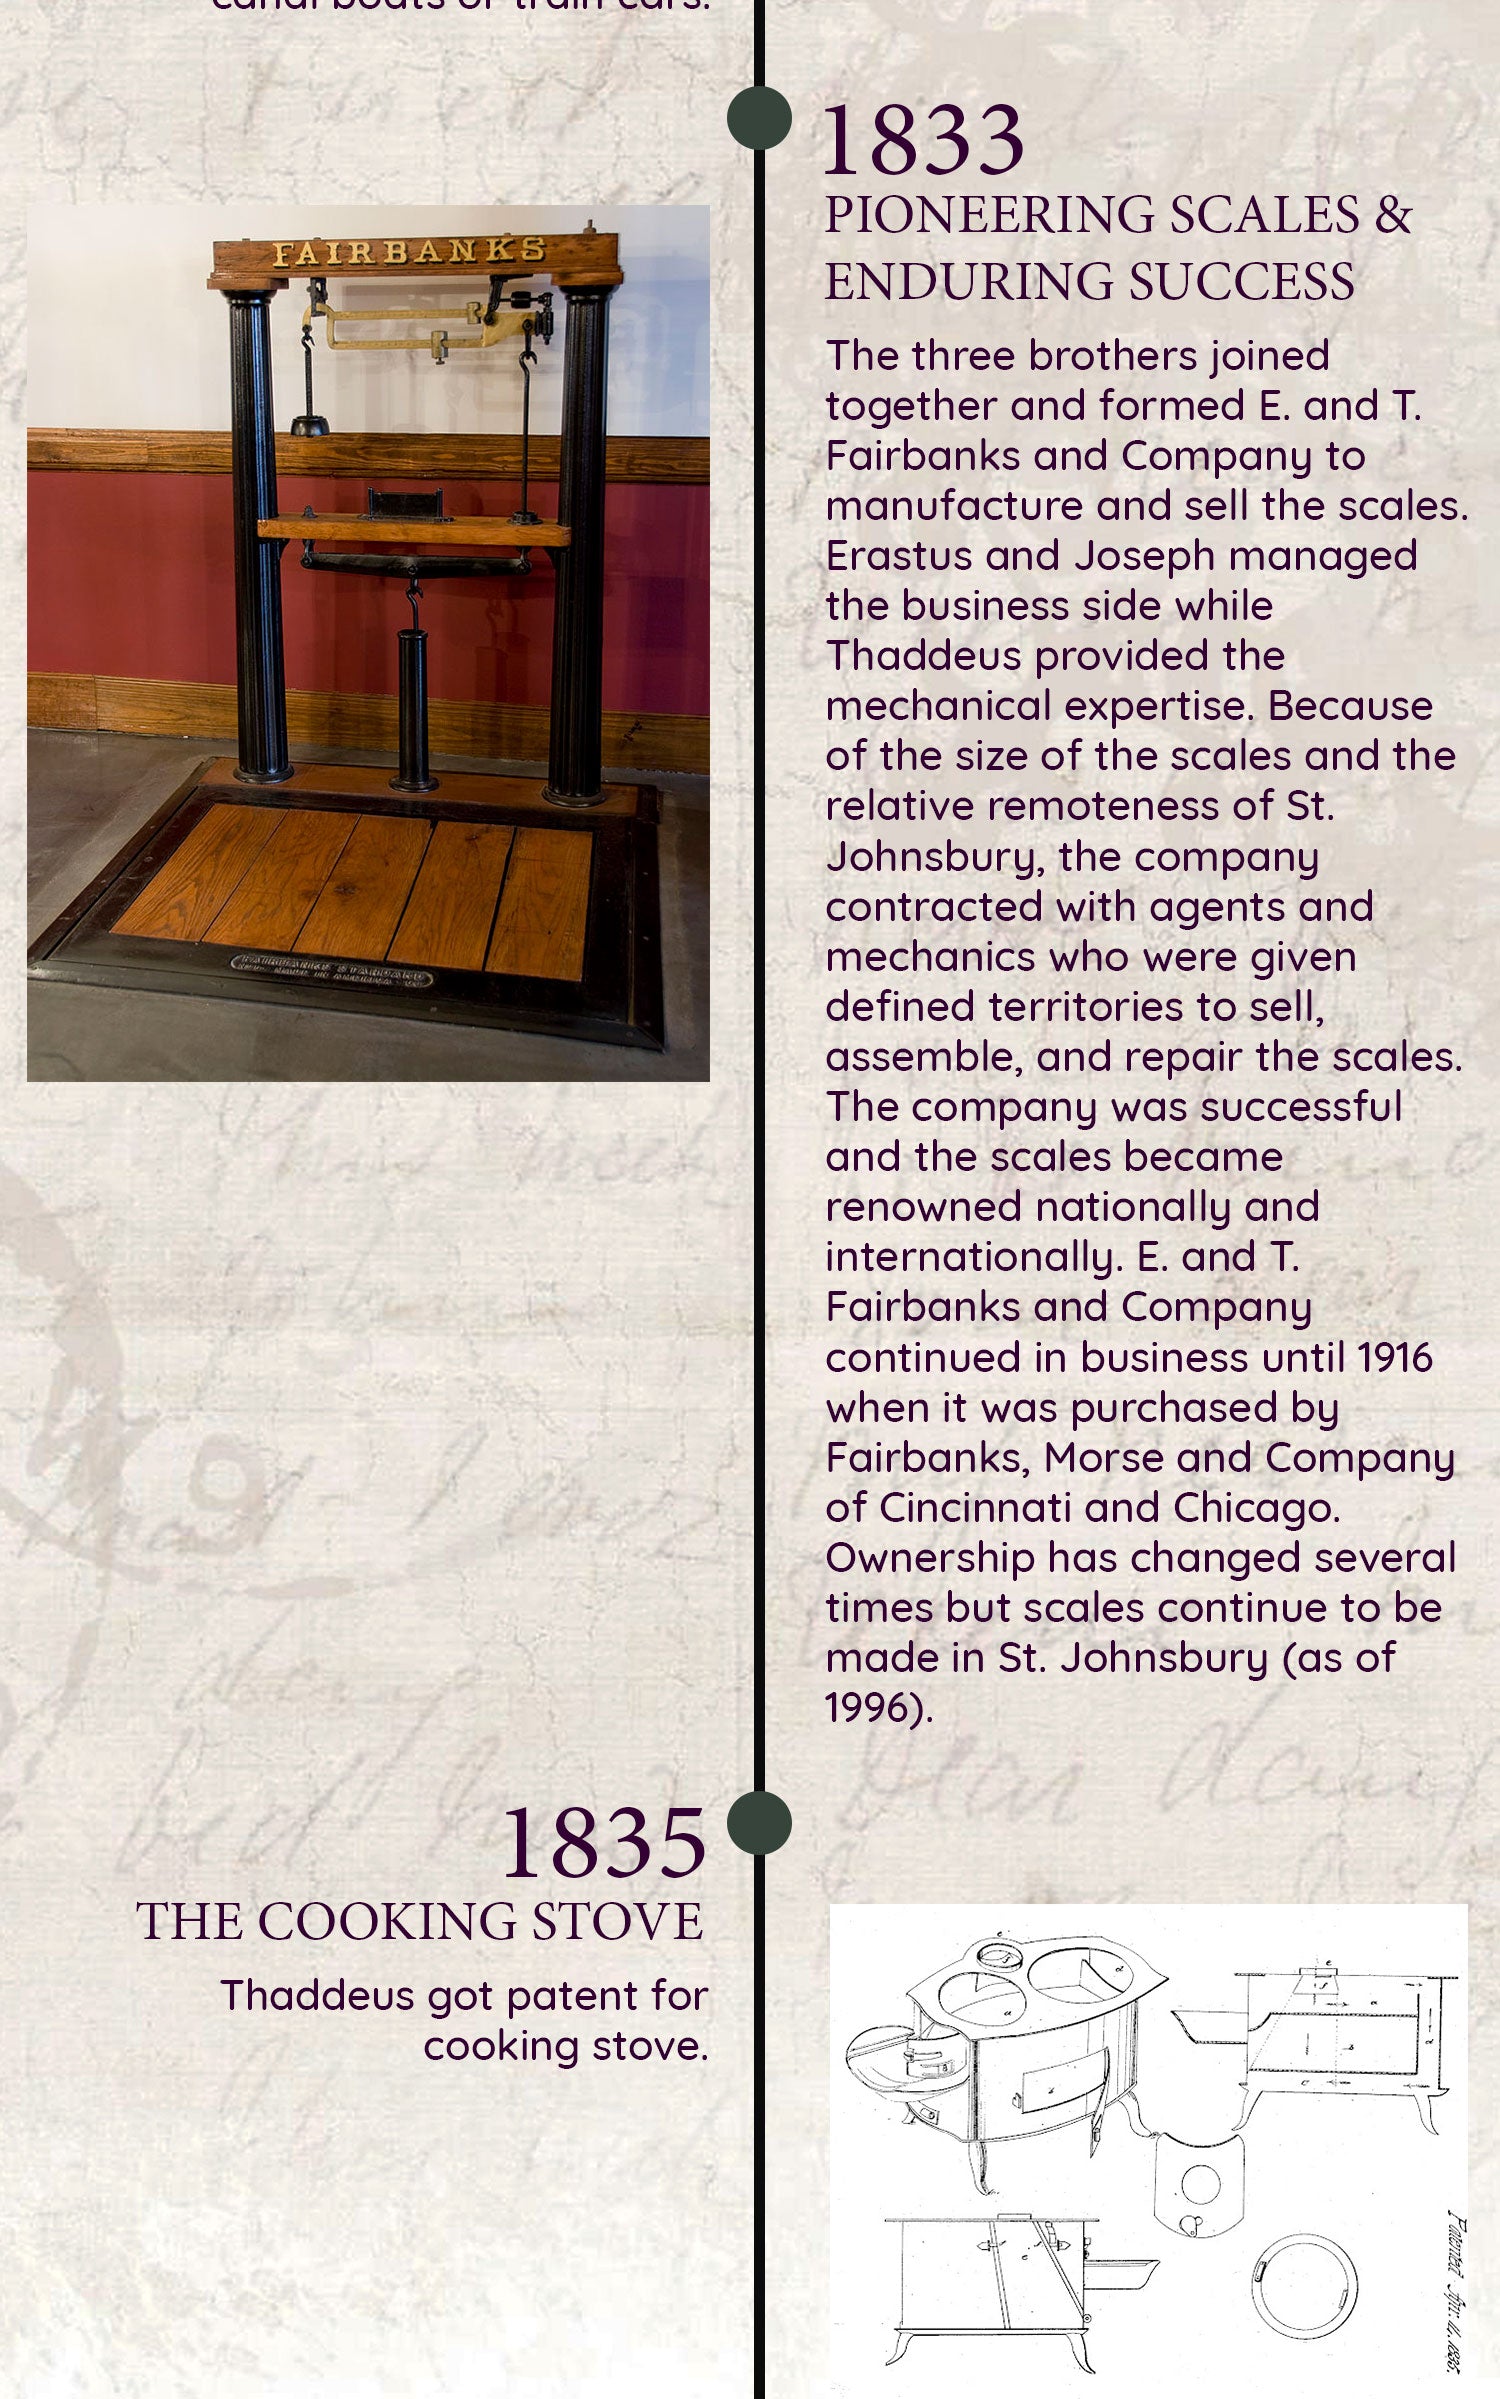 The Fairbanks Company History